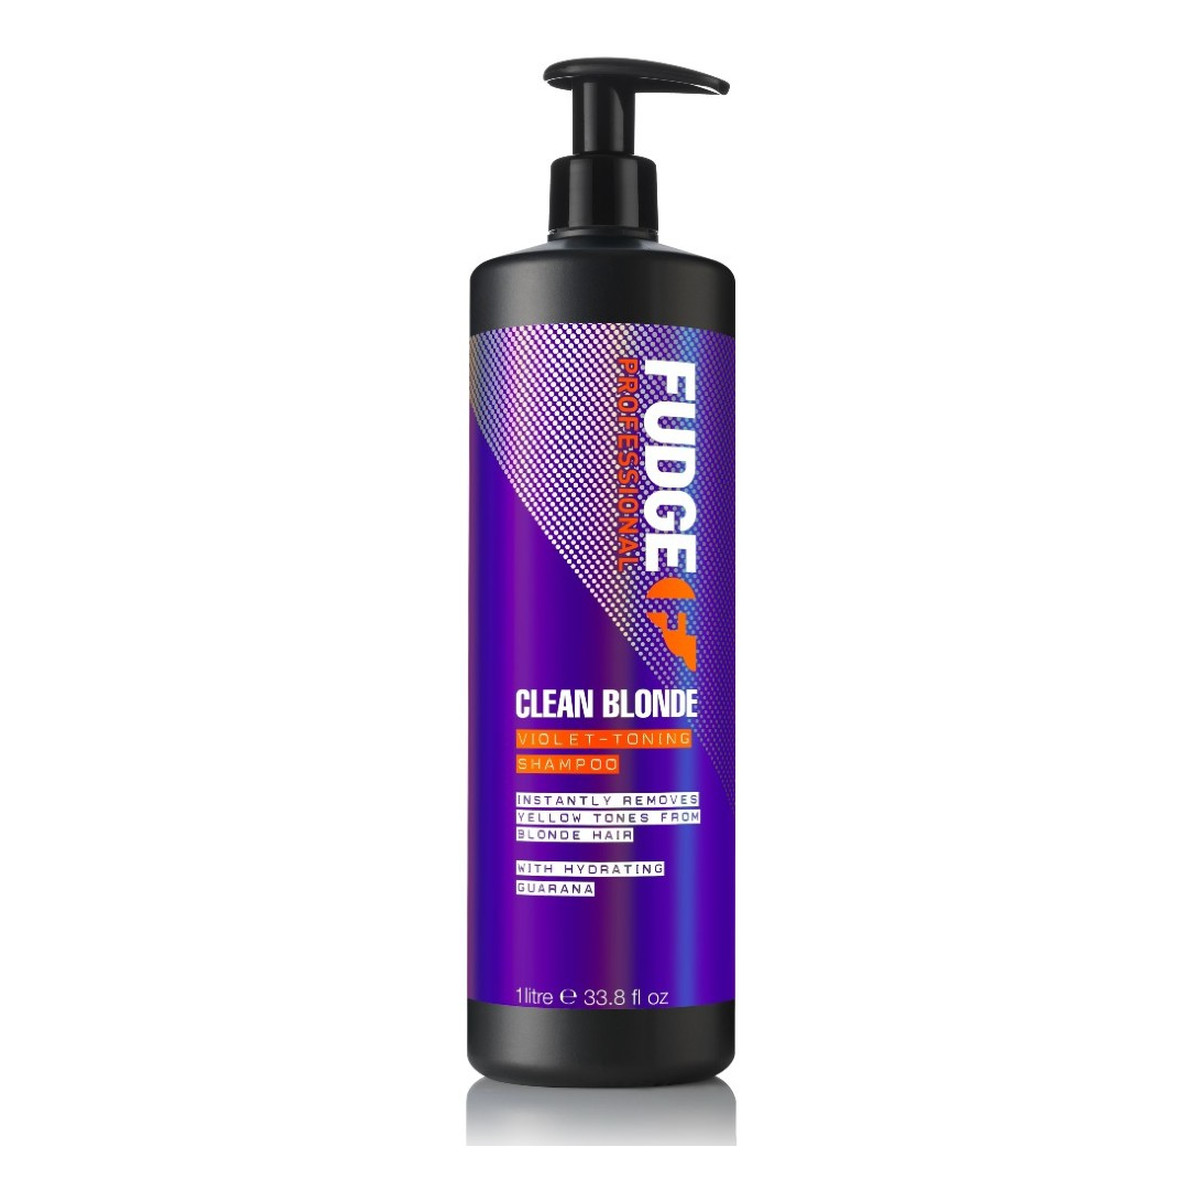 Fudge Clean blonde violet-toning shampoo tonujący szampon do włosów blond 1000ml